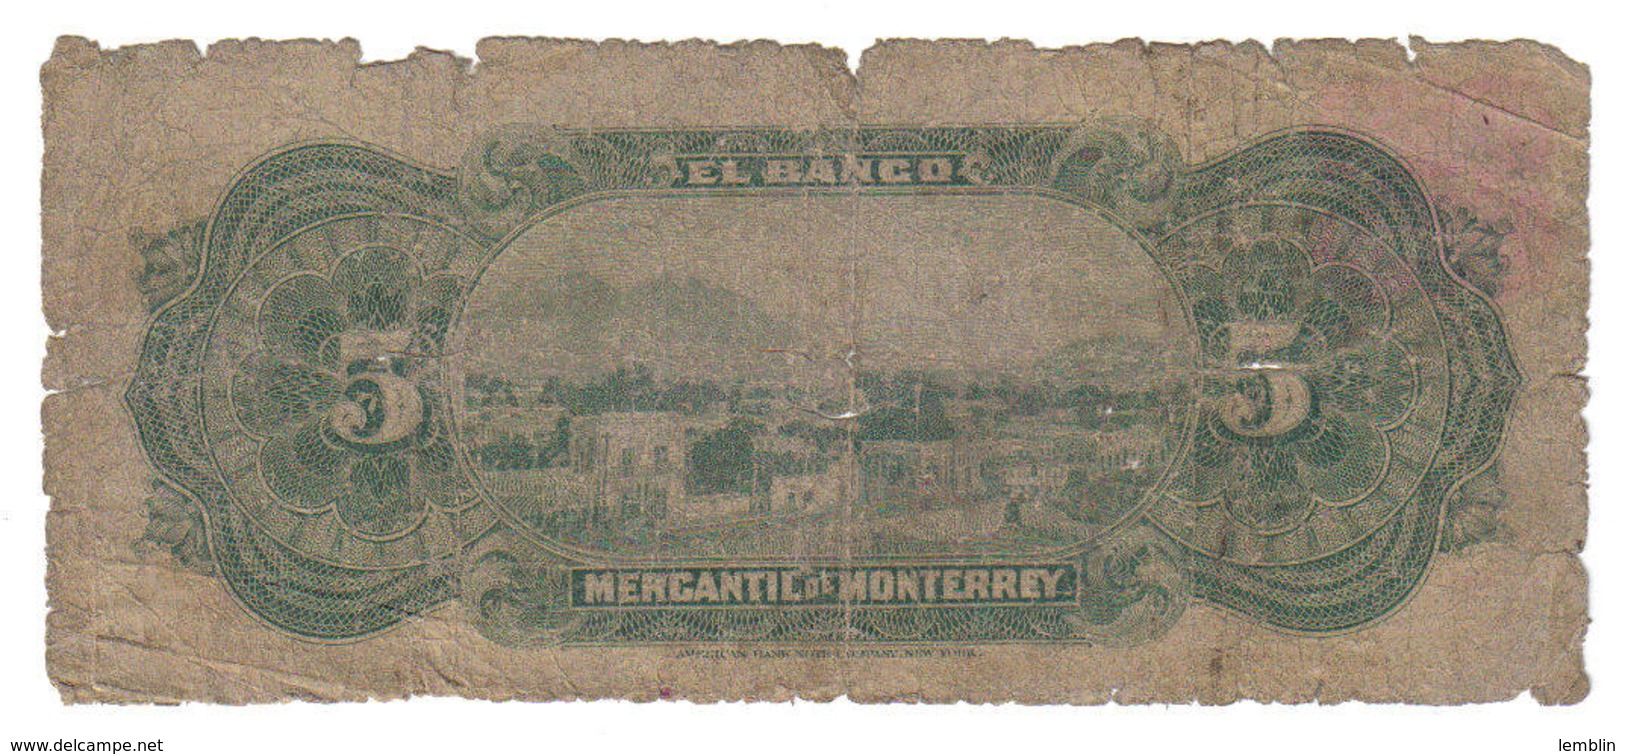 5 PESOS BANCO MERCANTIL DE MONTERREY 1906 - Mexiko